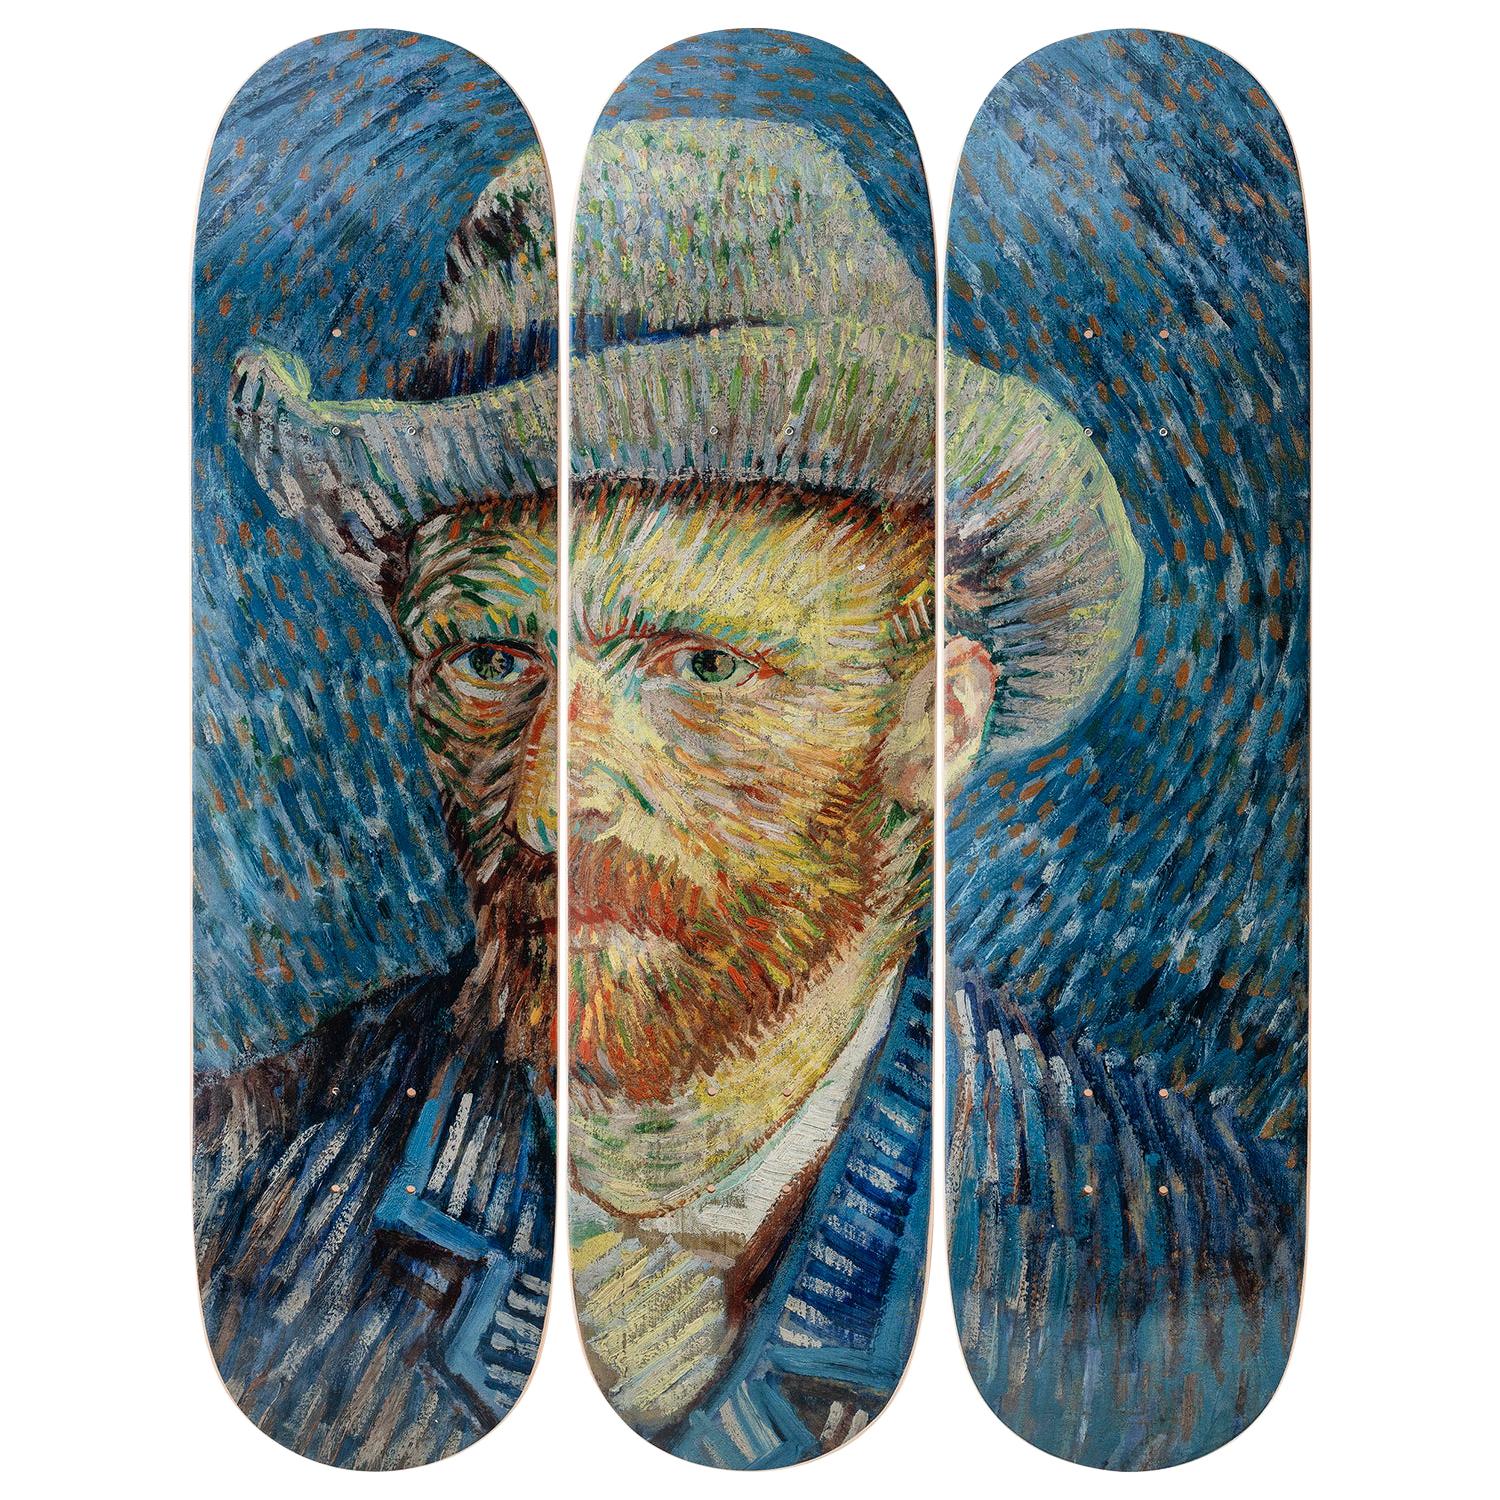 Self-Portrait Skateboard Decks after Vincent van Gogh